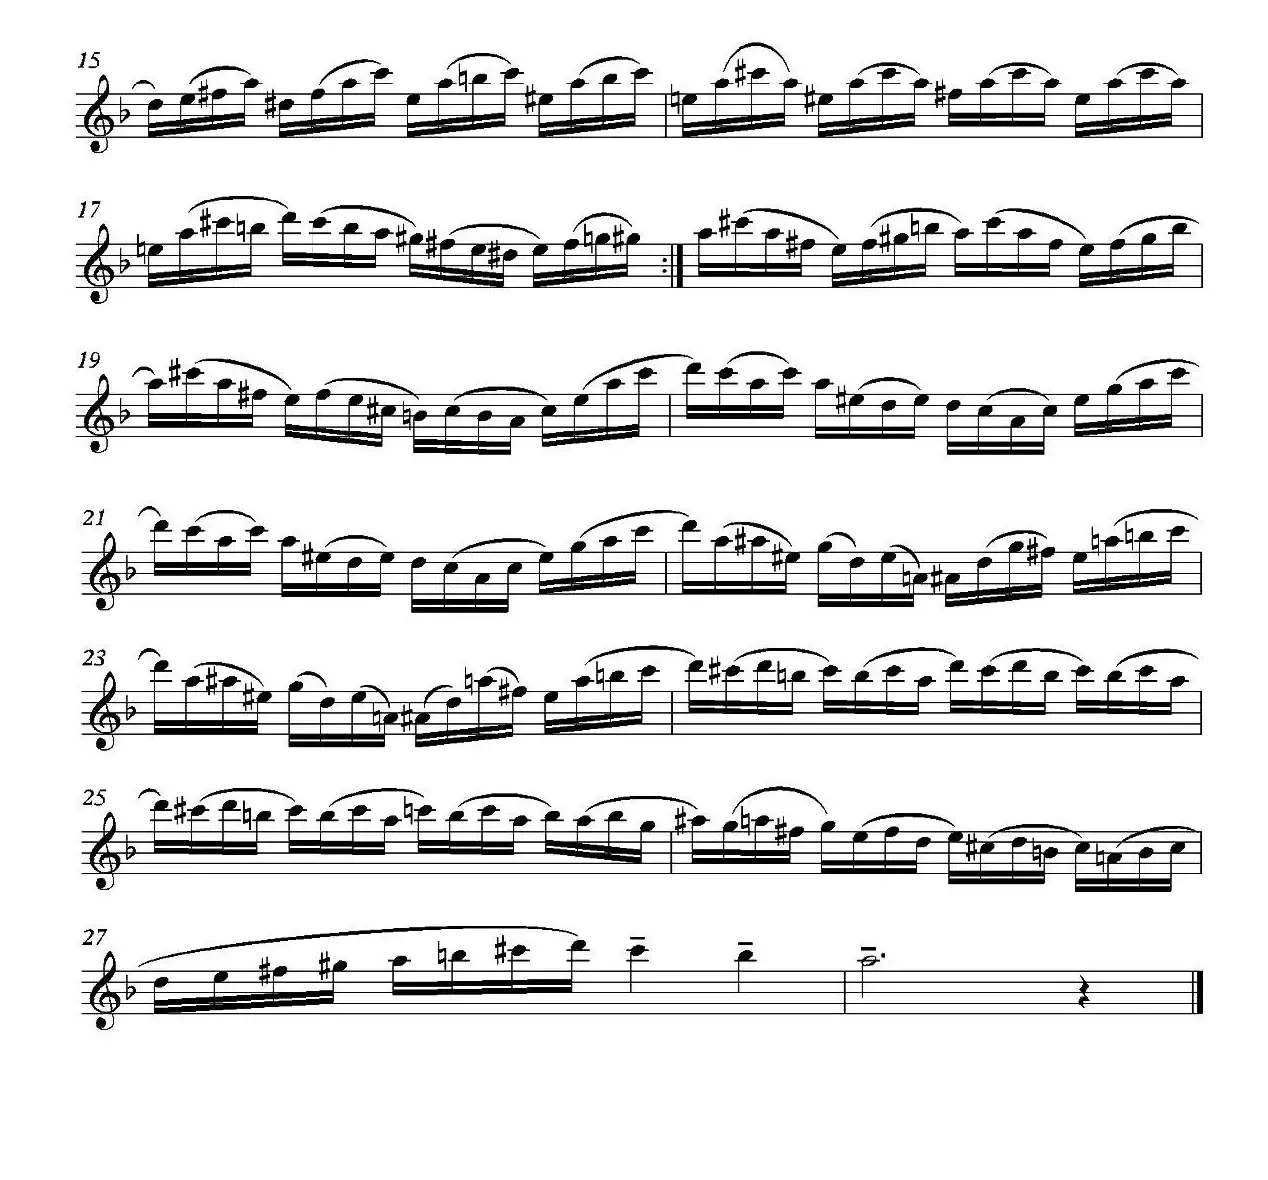 中级练习曲15首 Op76（14）